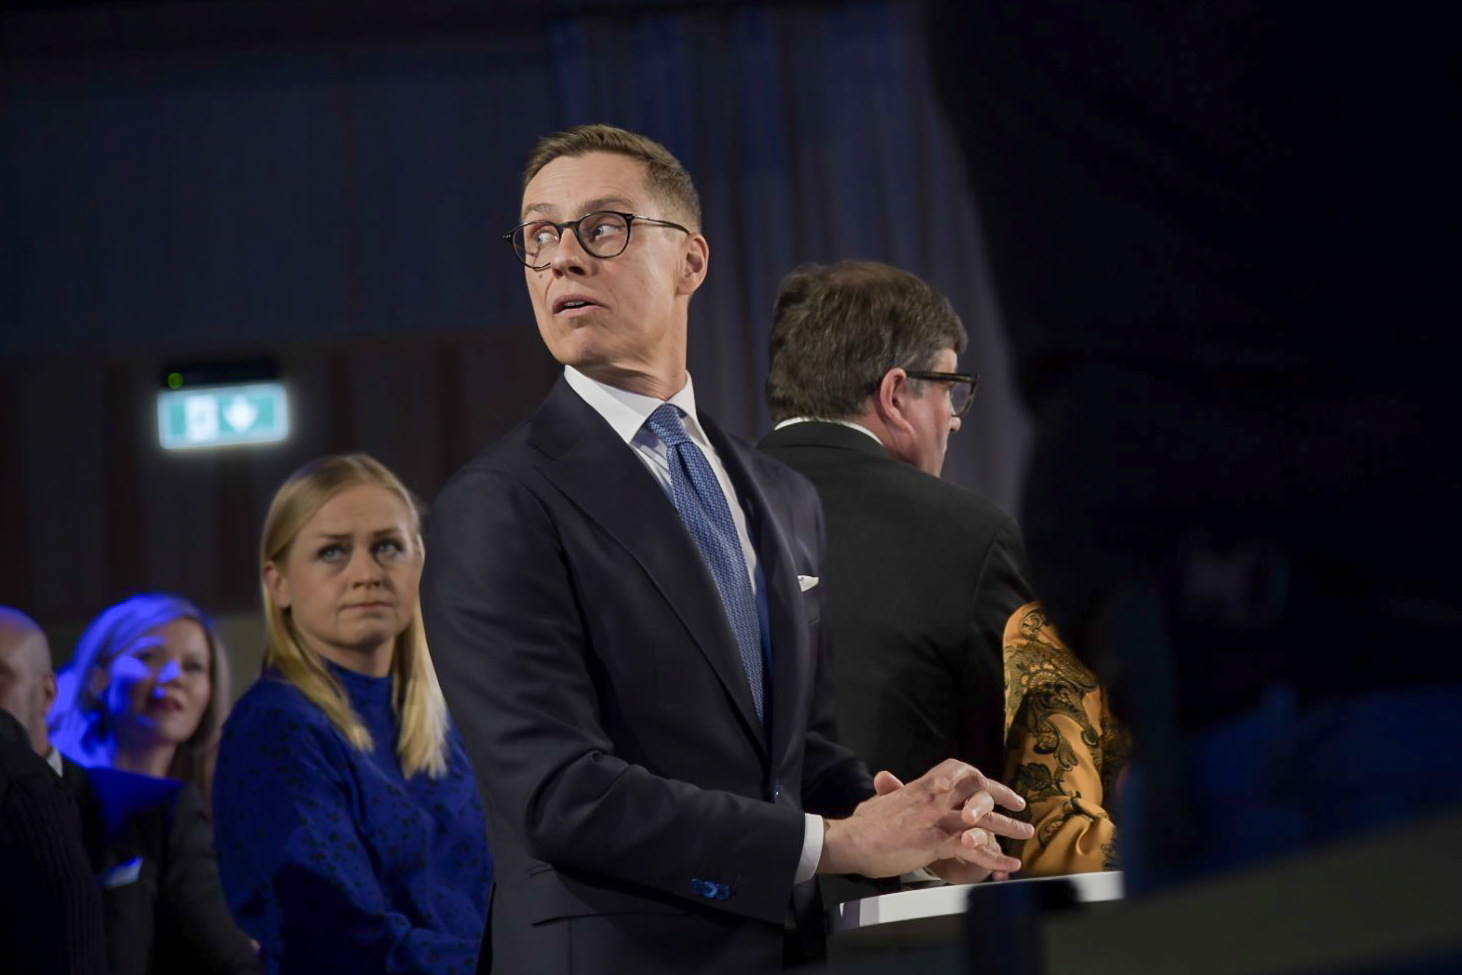 Finlandia elige como presidente al conservador Alexander Stubb, partidario de colocar más tropas de la OTAN junto a Rusia